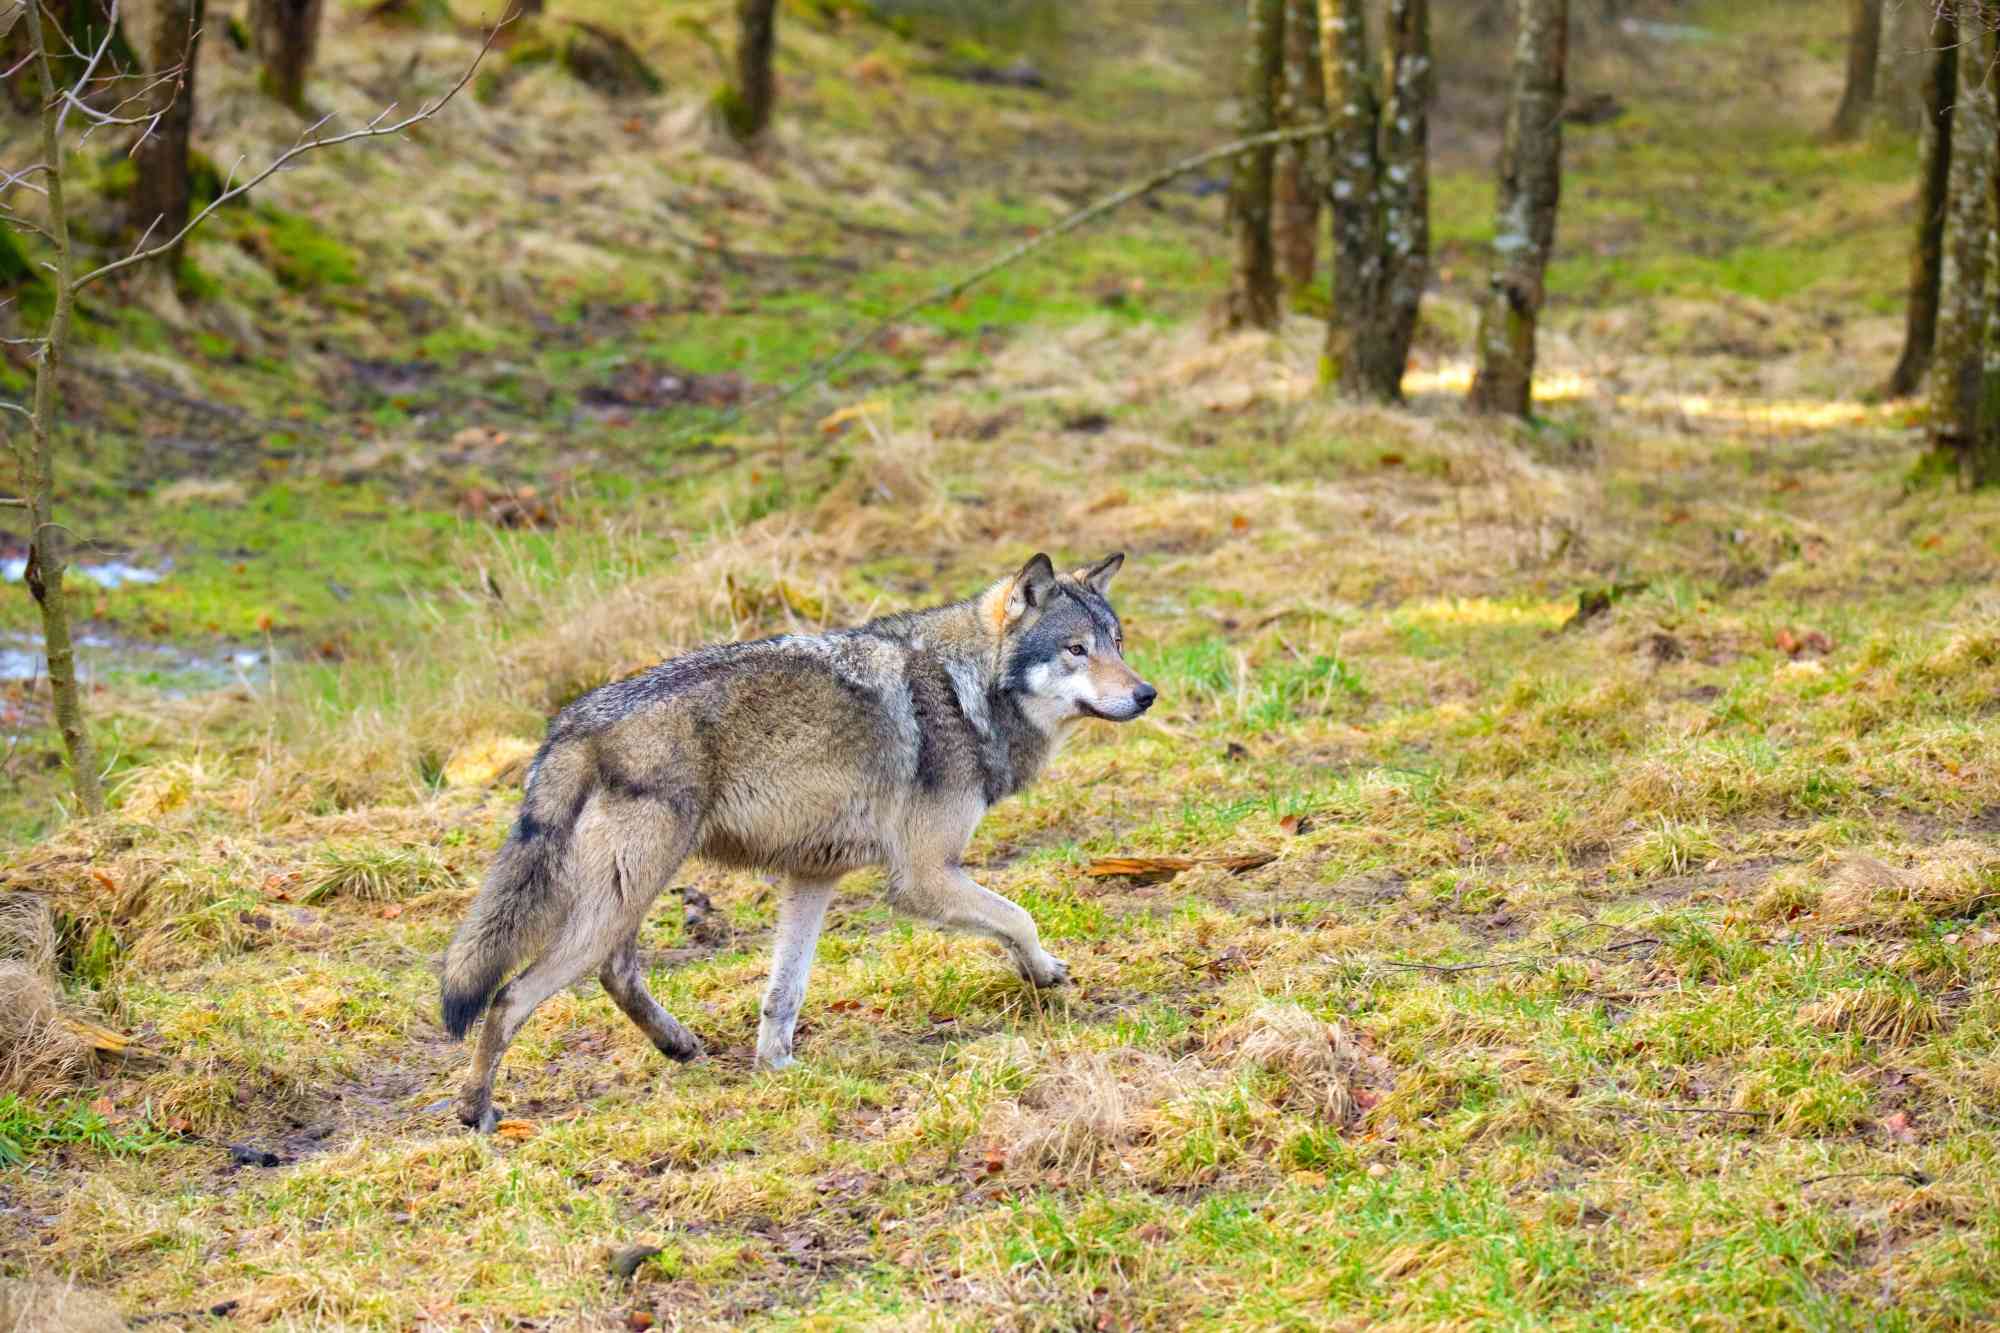 Male Gray Wolf in Autumn Forest - kjekol - iStockphoto